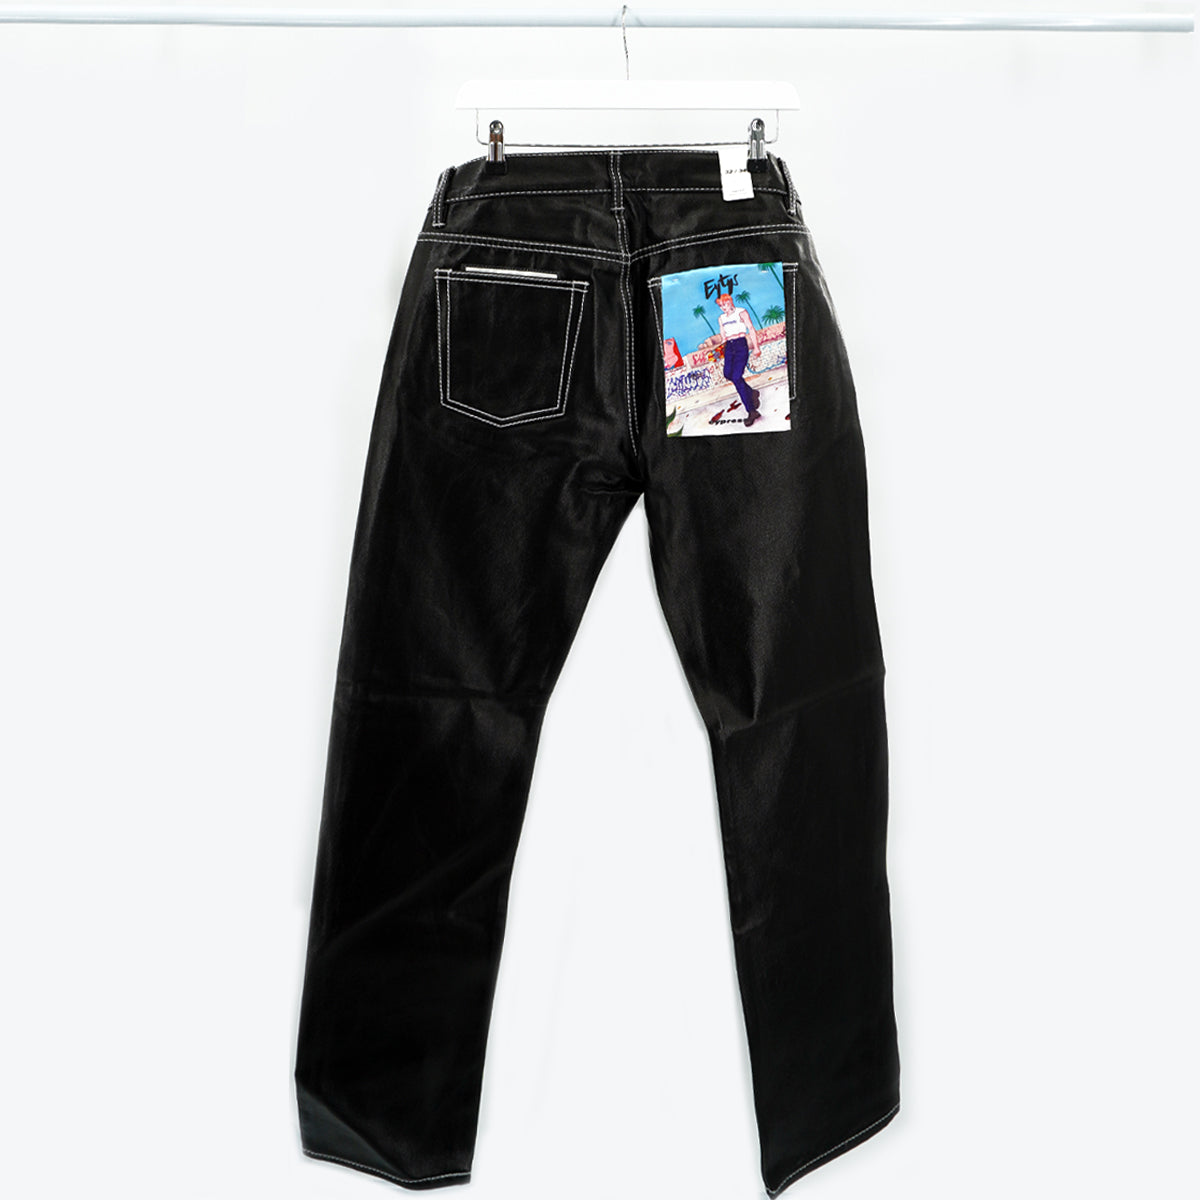 Eytys Cypress Tar Jeans Black Unisex 27 x 30